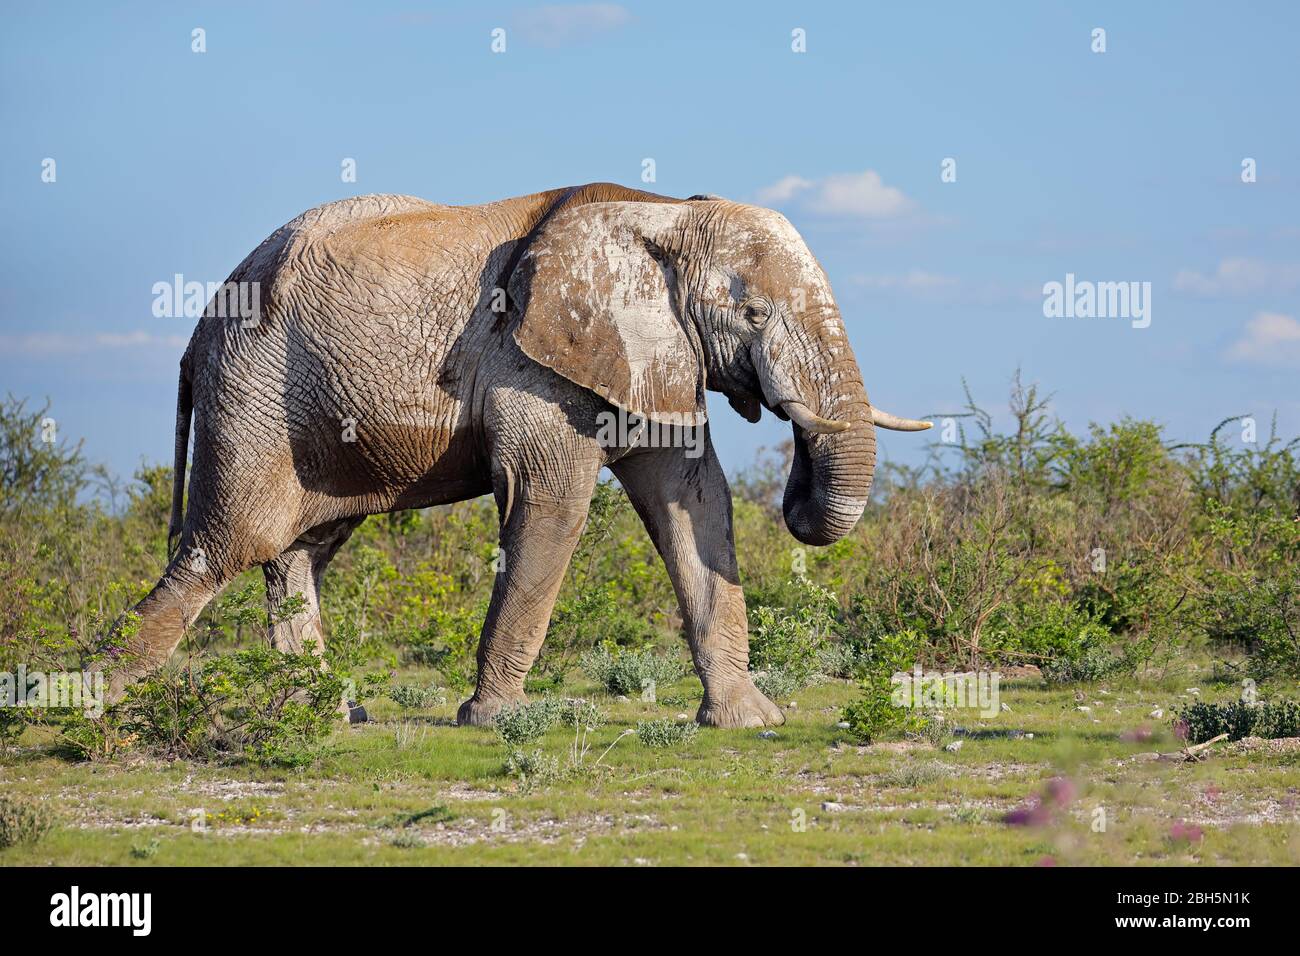 Large African elephant (Loxodonta africana) bull covered in mud, Etosha National Park, Namibia Stock Photo